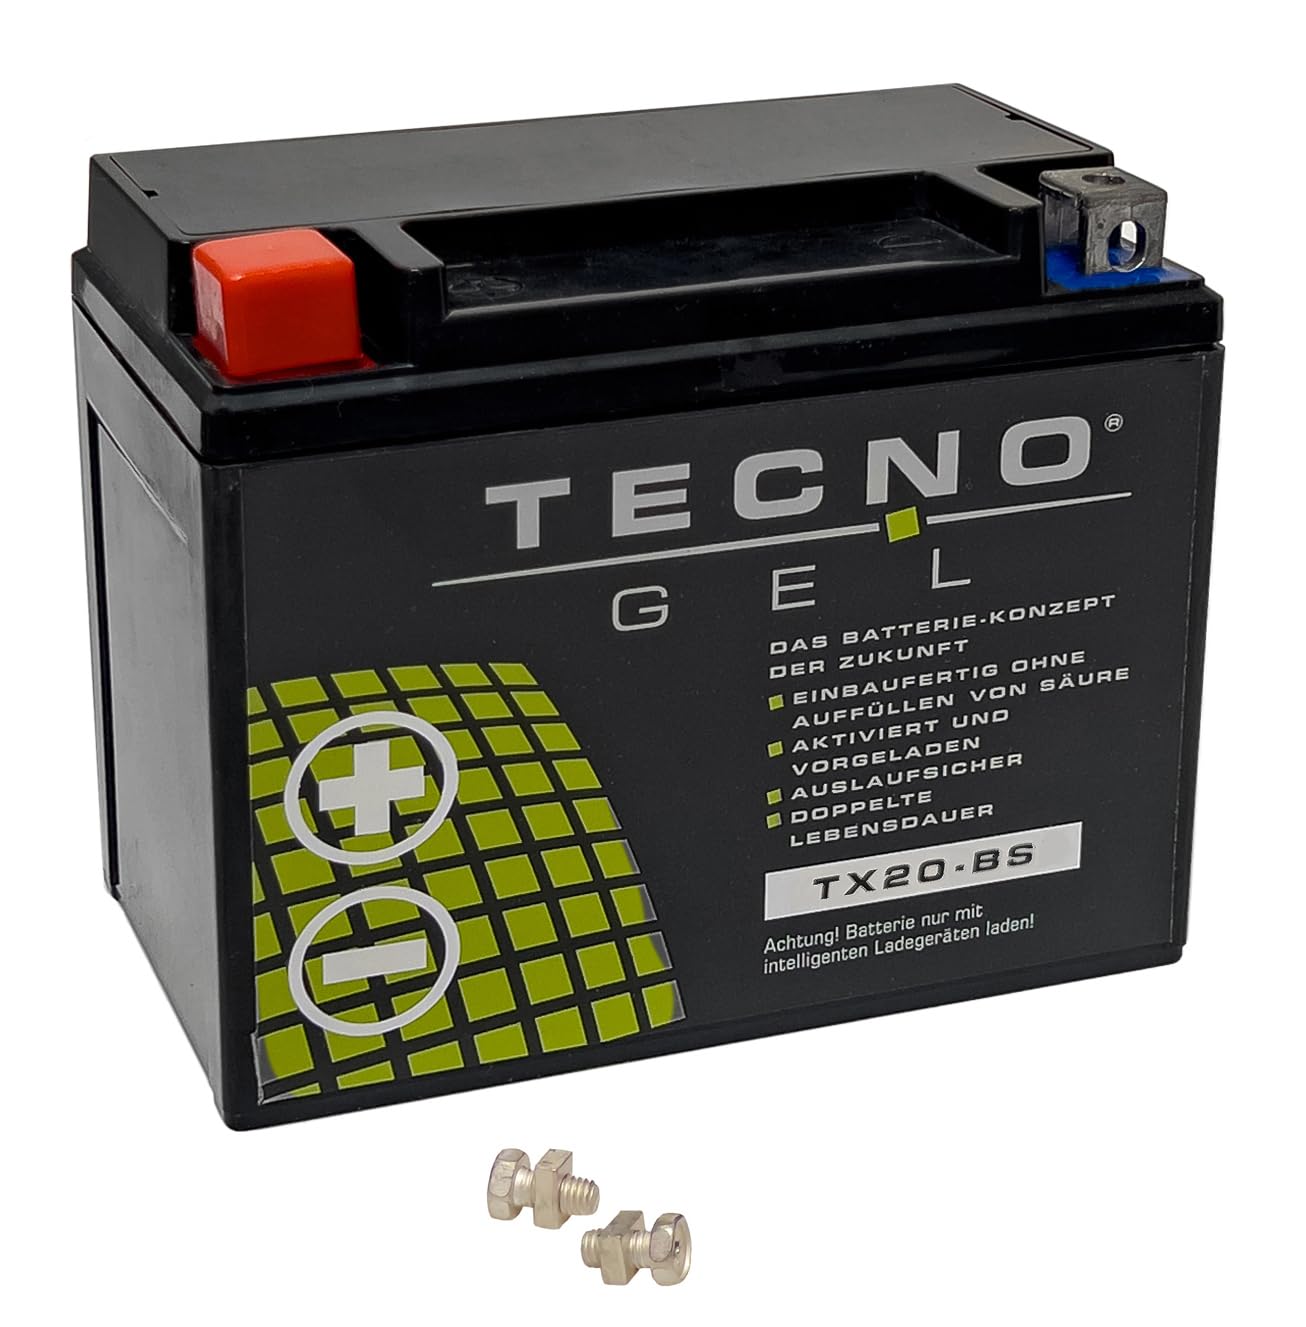 TECNO GEL Motorrad-Qualitäts-Batterie für YTX20-BS für HARLEY DAVIDSON FXLR 1340 Low Rider 1987-1994, 12V Gel-Batterie 18 Ah, 175x87x155 mm von Wirth-Federn